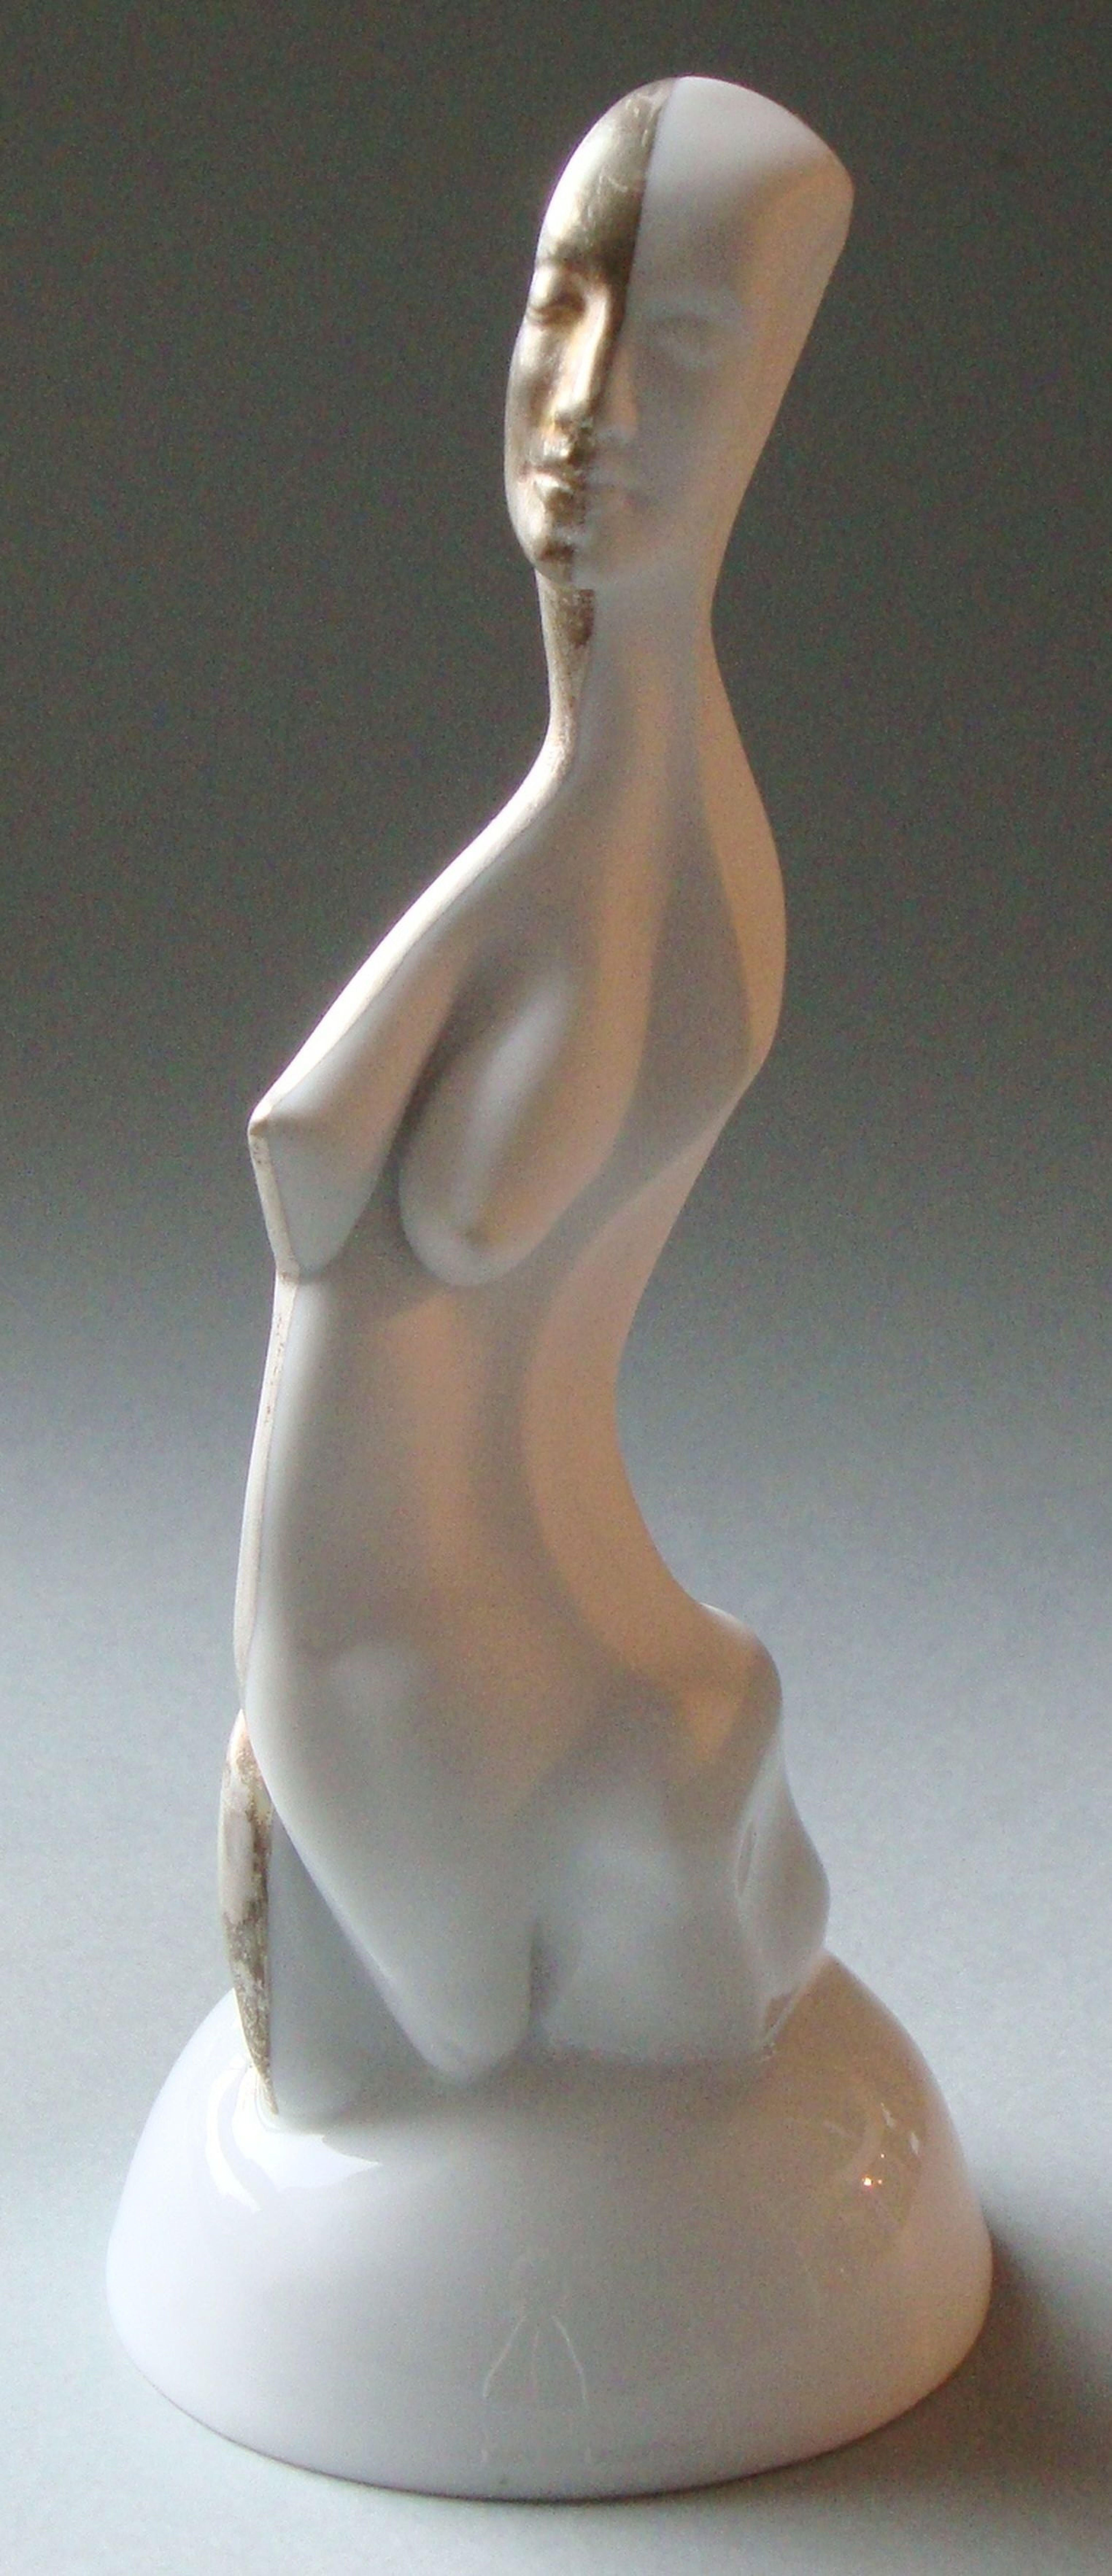 La figure de la femme sur un piédestal  Porcelaine, argent, h 20 cm - Contemporain Sculpture par Ilona Romule